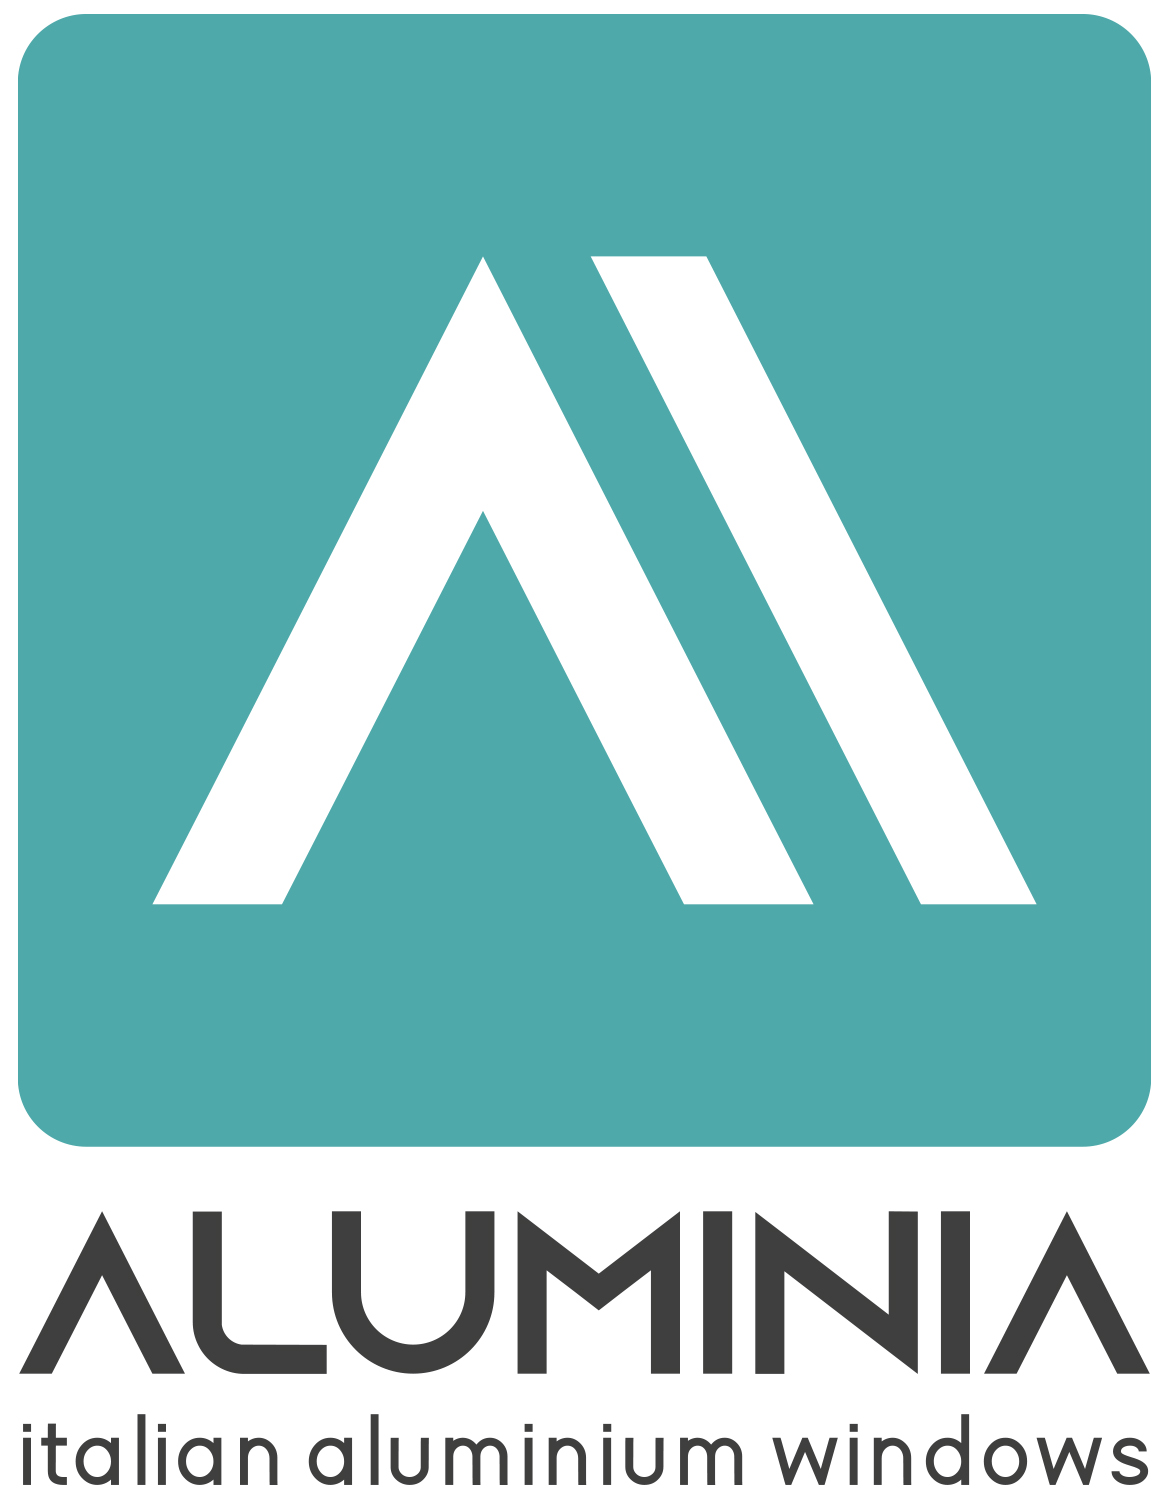 Aluminia